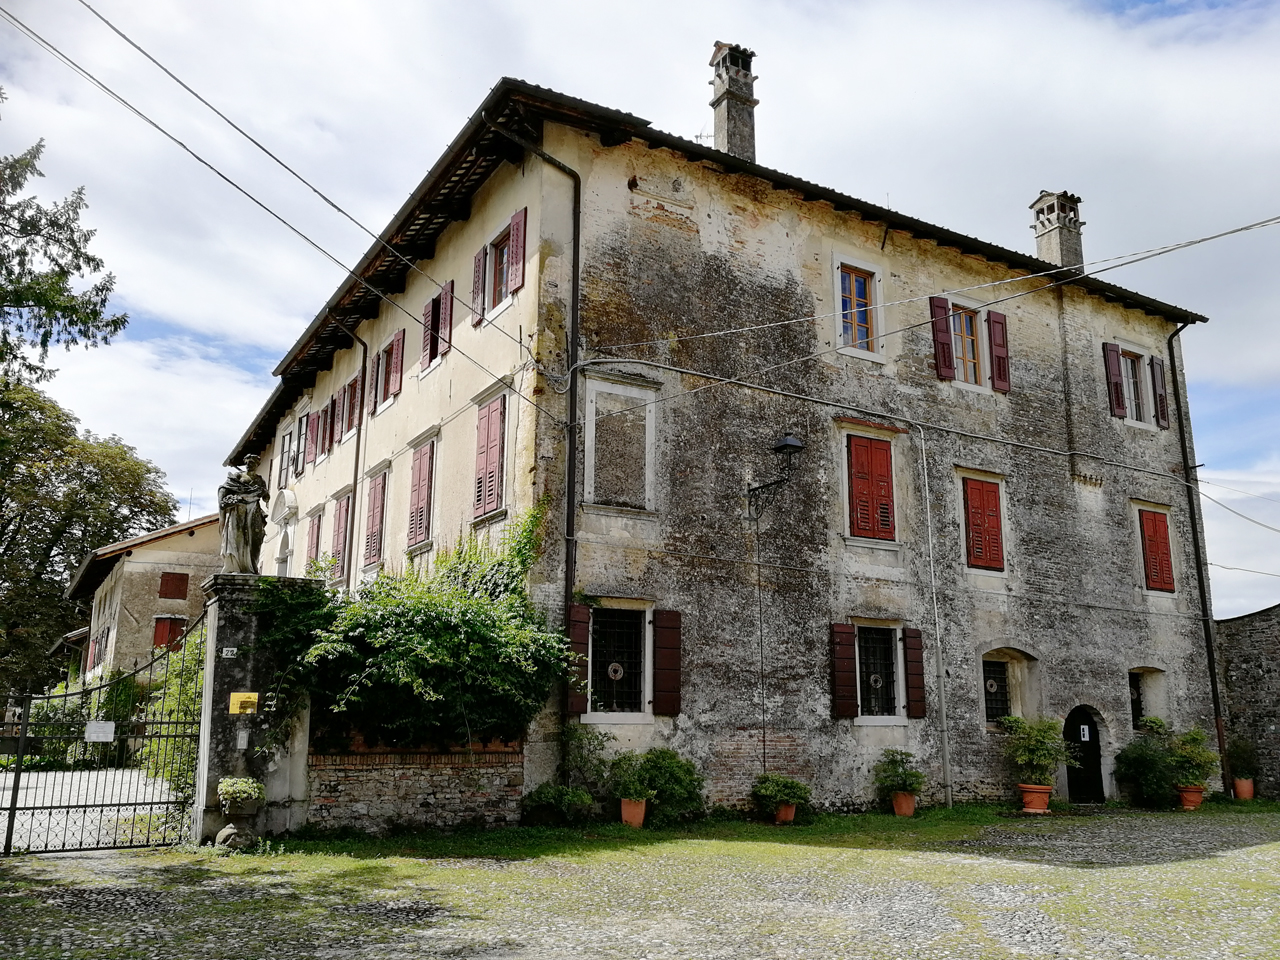 Castello di Strassoldo di Sotto con parco (castello, privato) - Cervignano del Friuli (UD)  (XIX, primo quarto)